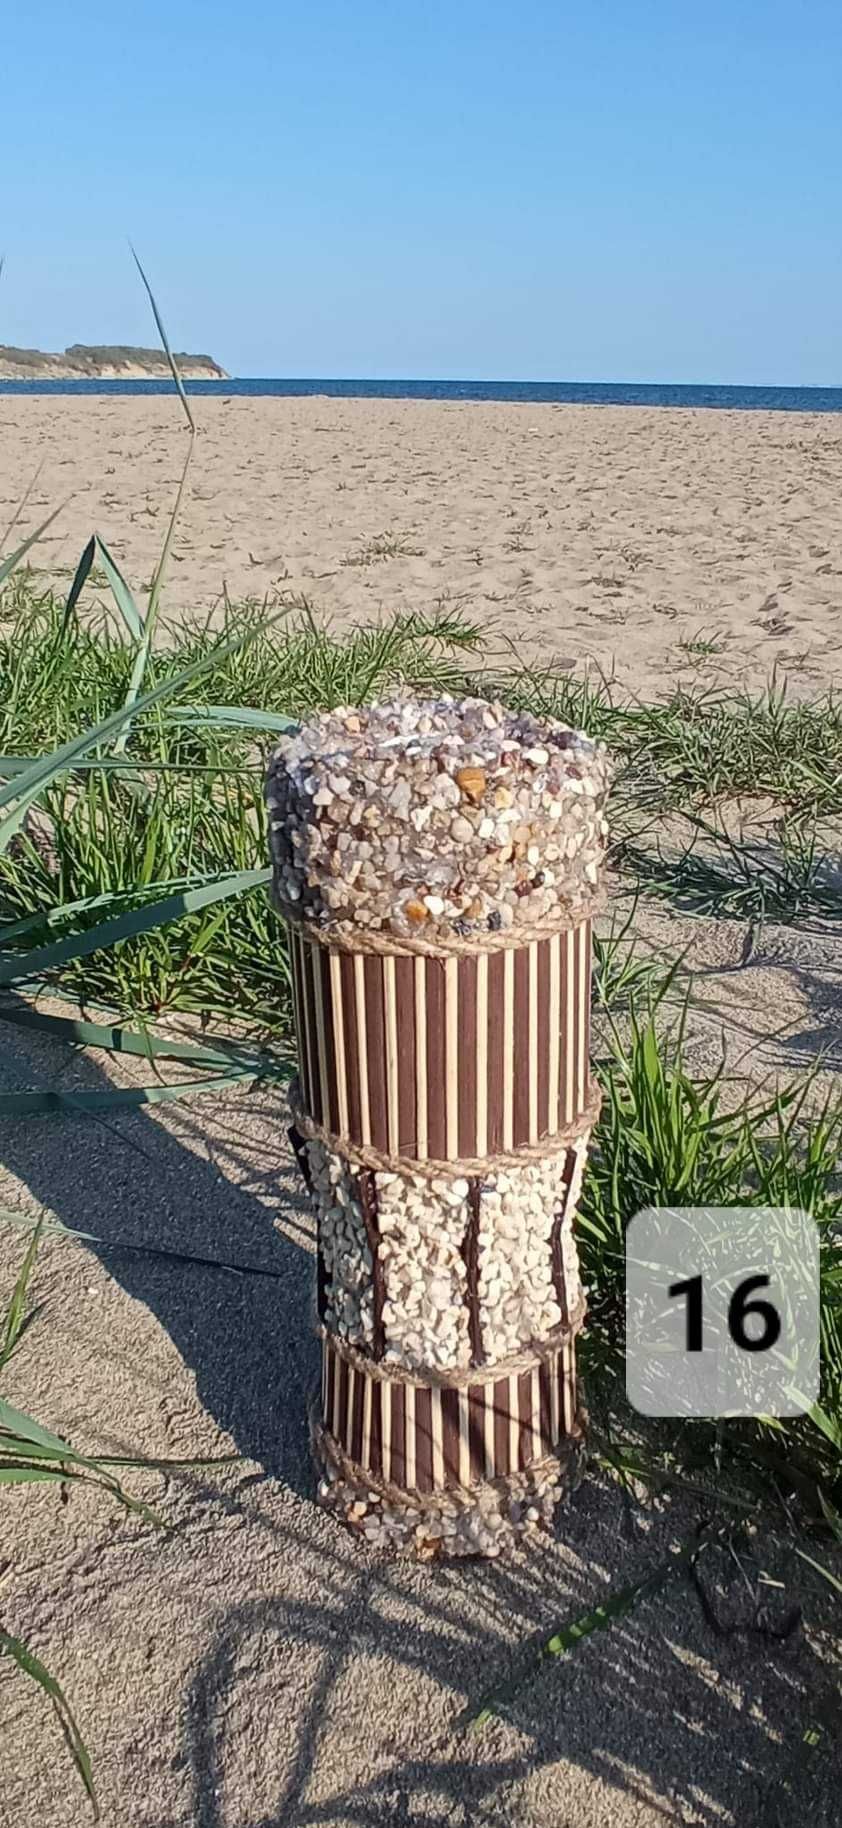 Ръчно изработени вази с натурални морски материали